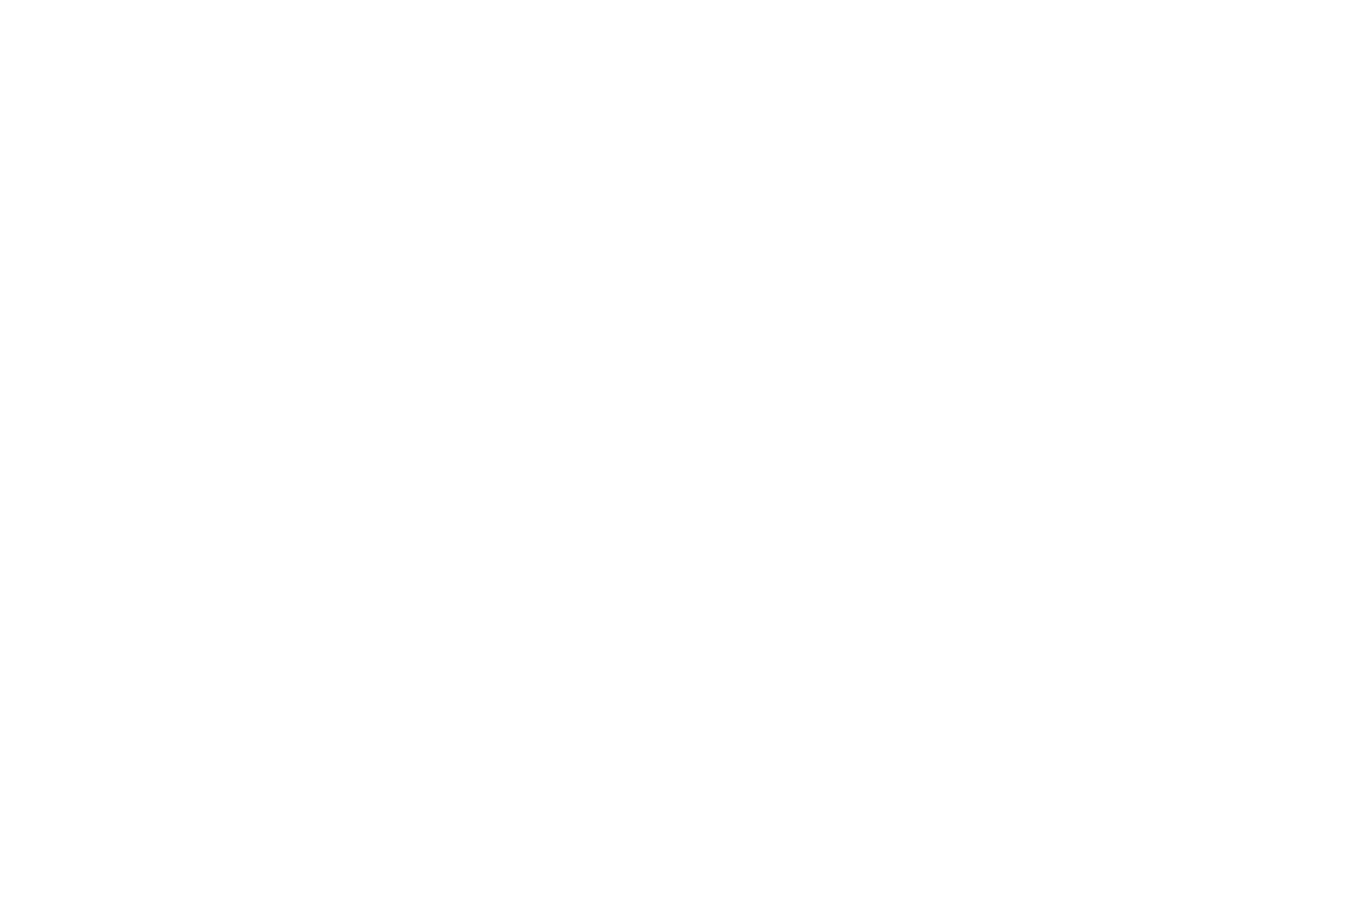 RBC Desire Lines 